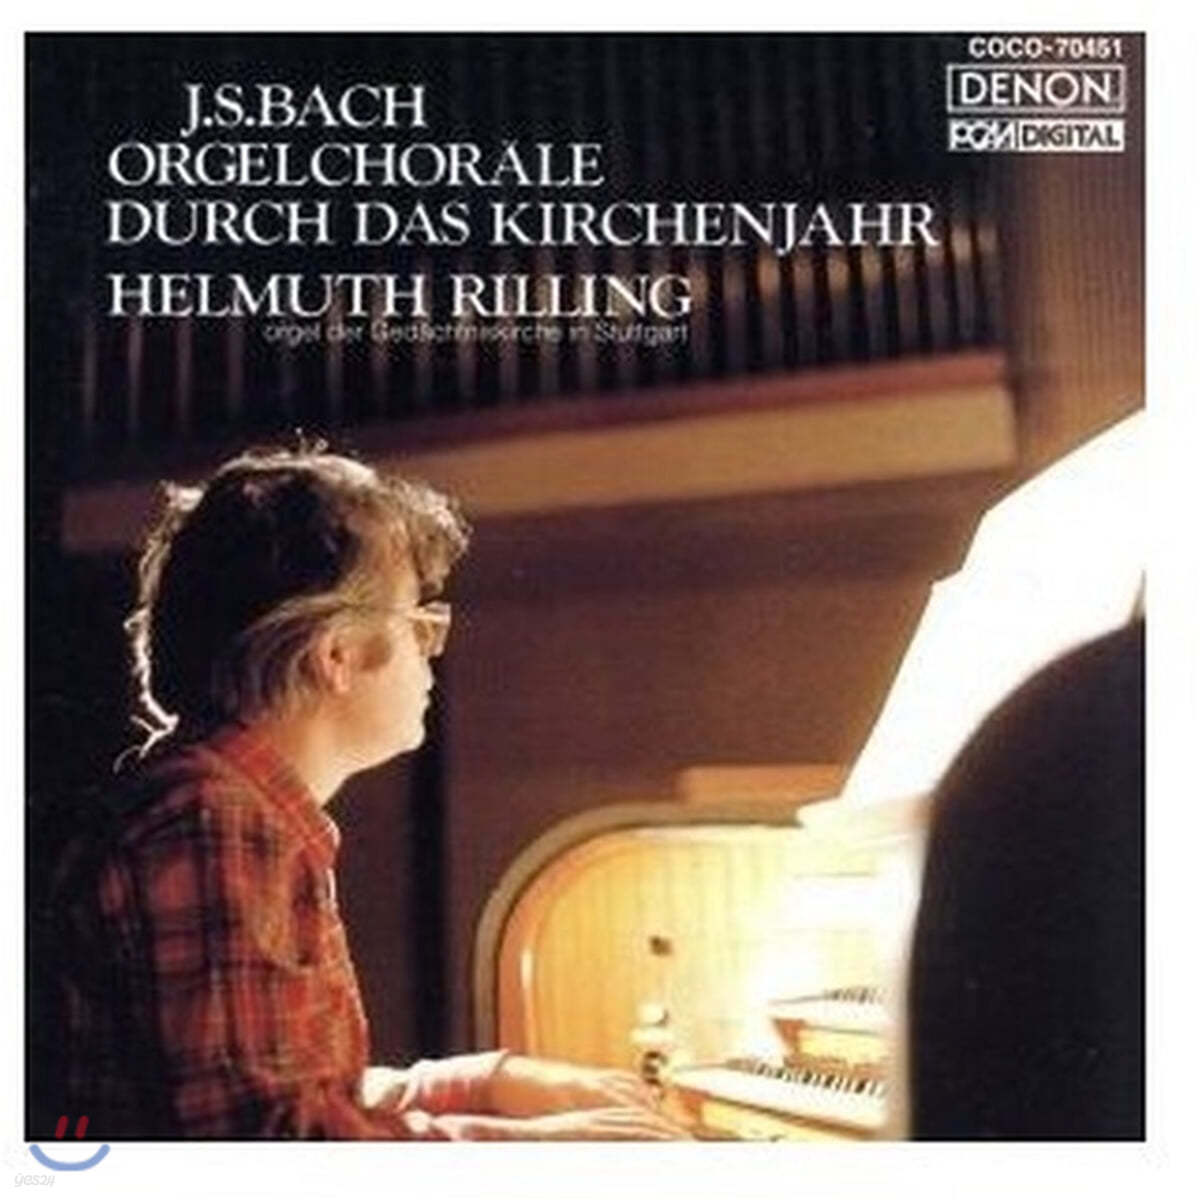 Helmuth Rilling 바흐: 교회 오르간 합창곡집 (Bach: Orgel chorale Durch das Kirchenjahr)